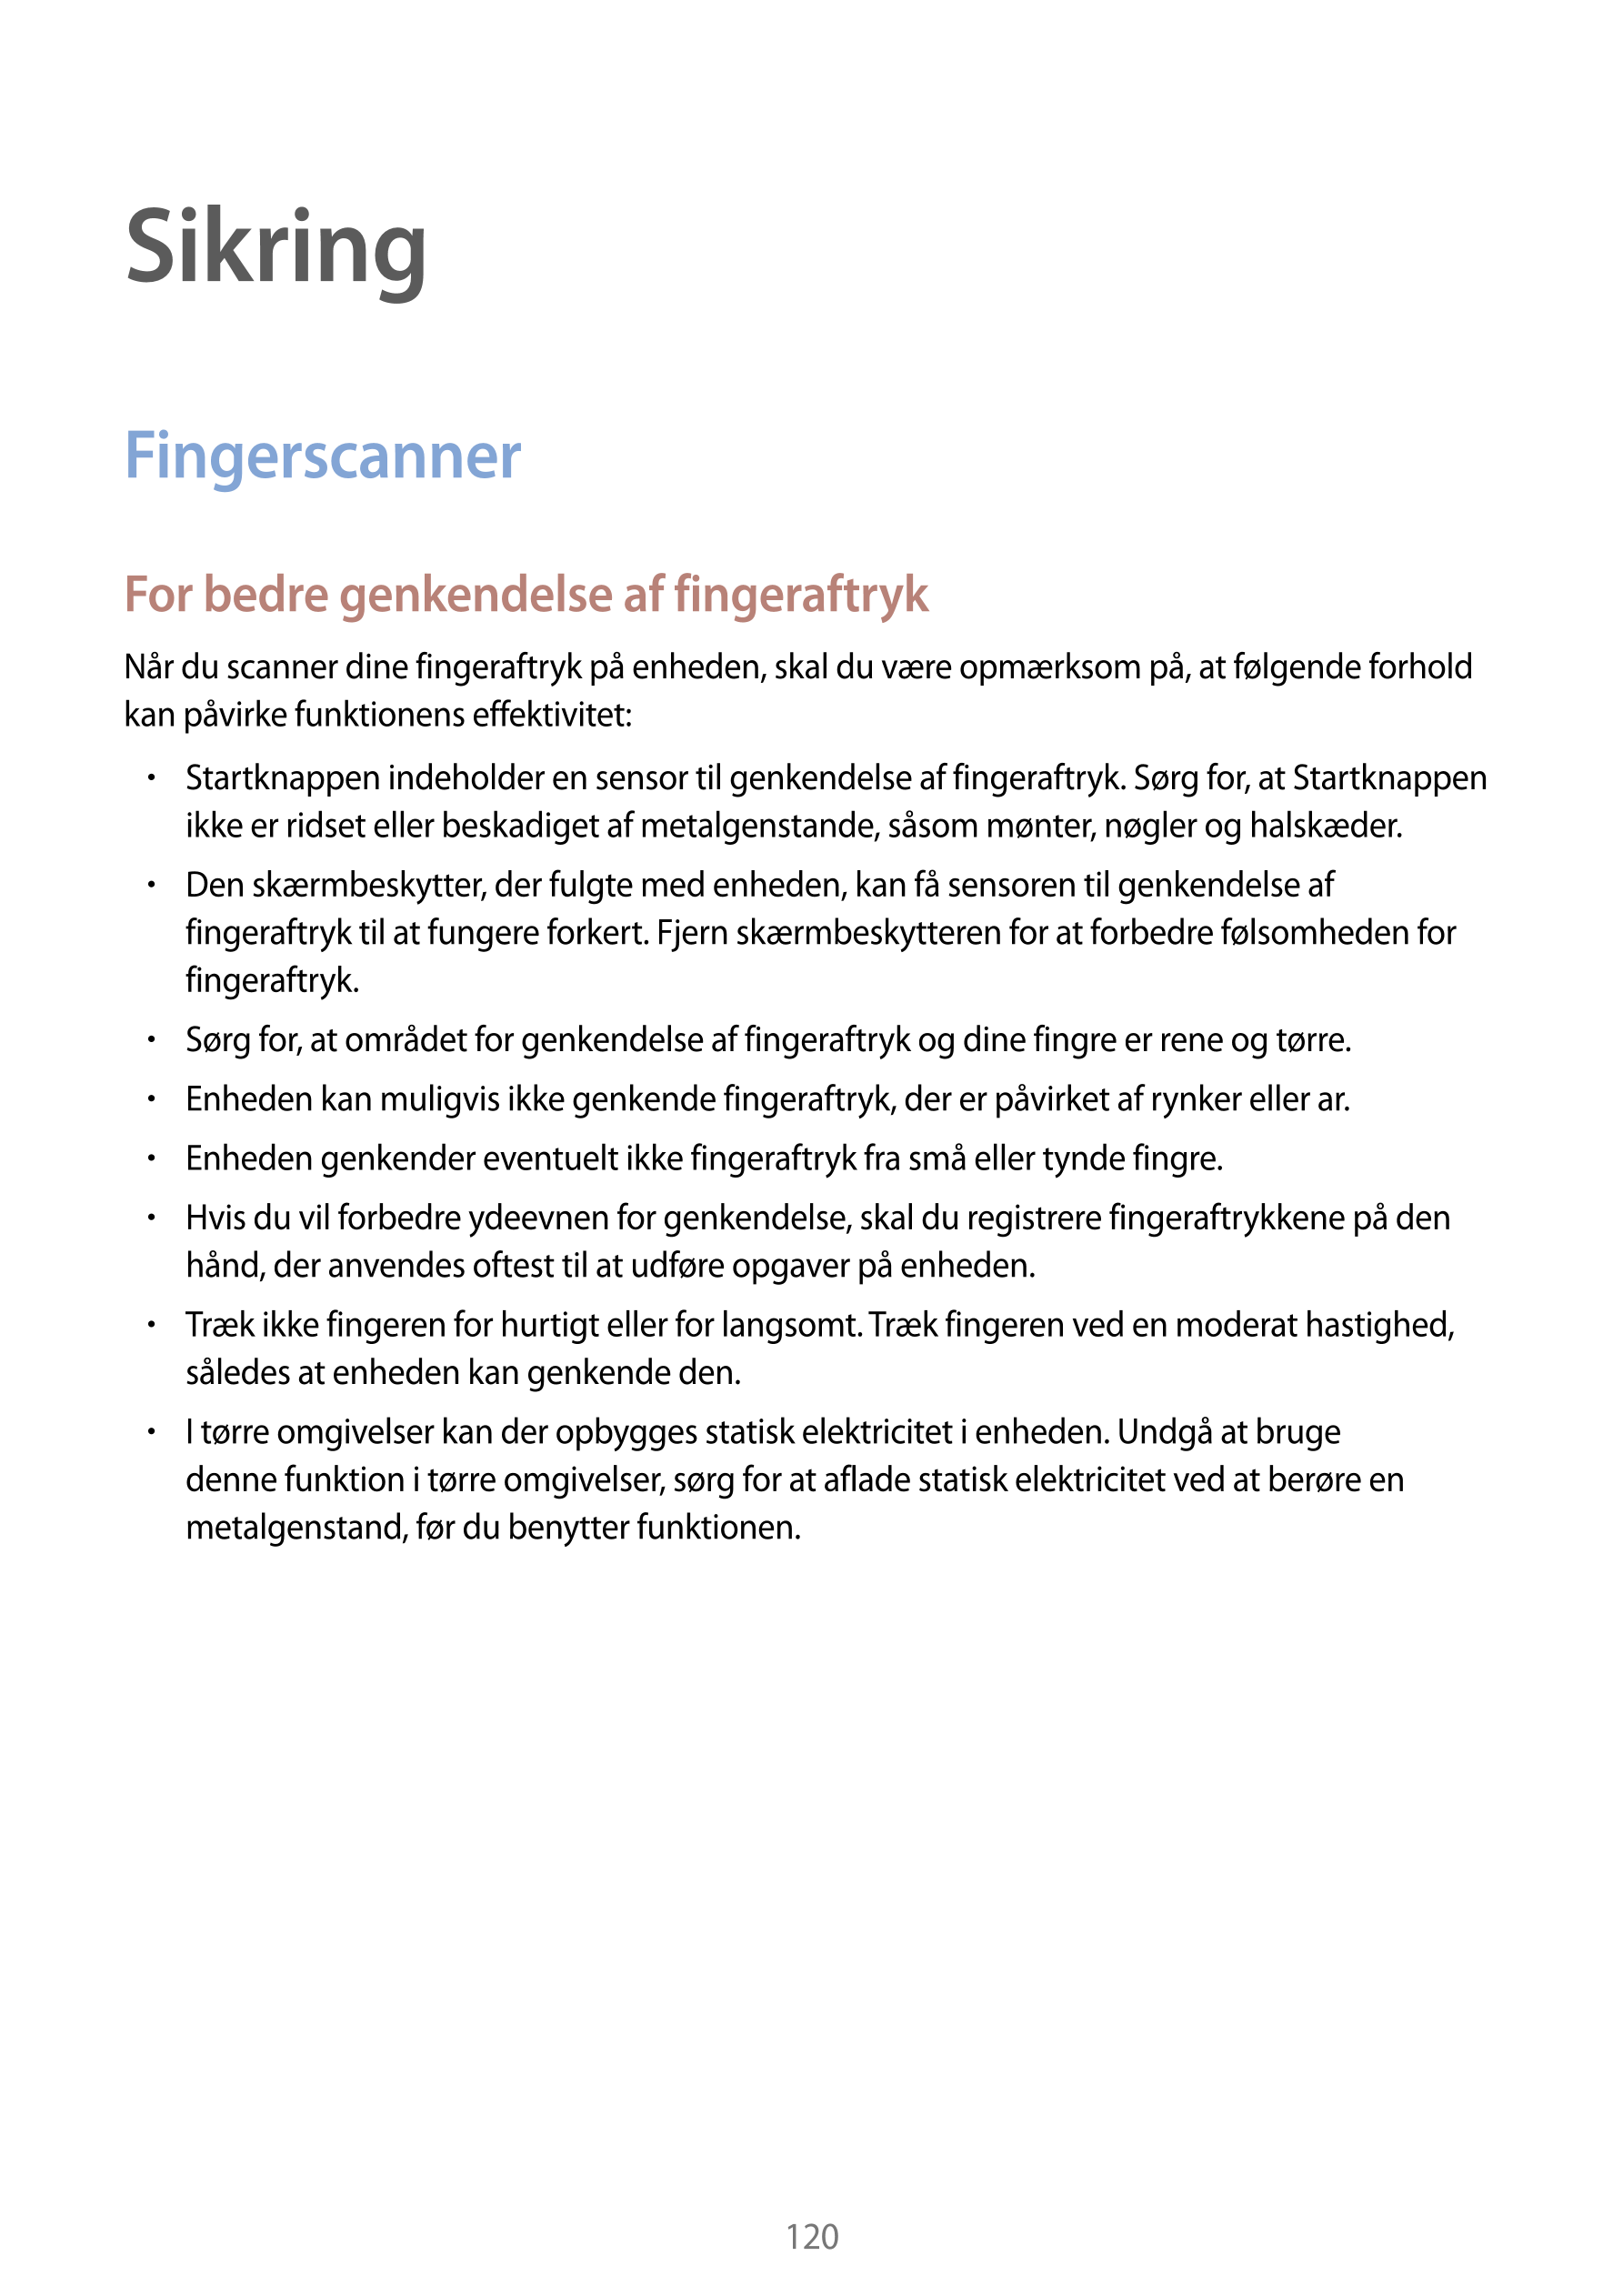 Sikring
Fingerscanner
For bedre genkendelse af fingeraftryk
Når du scanner dine fingeraftryk på enheden, skal du være opmærksom 